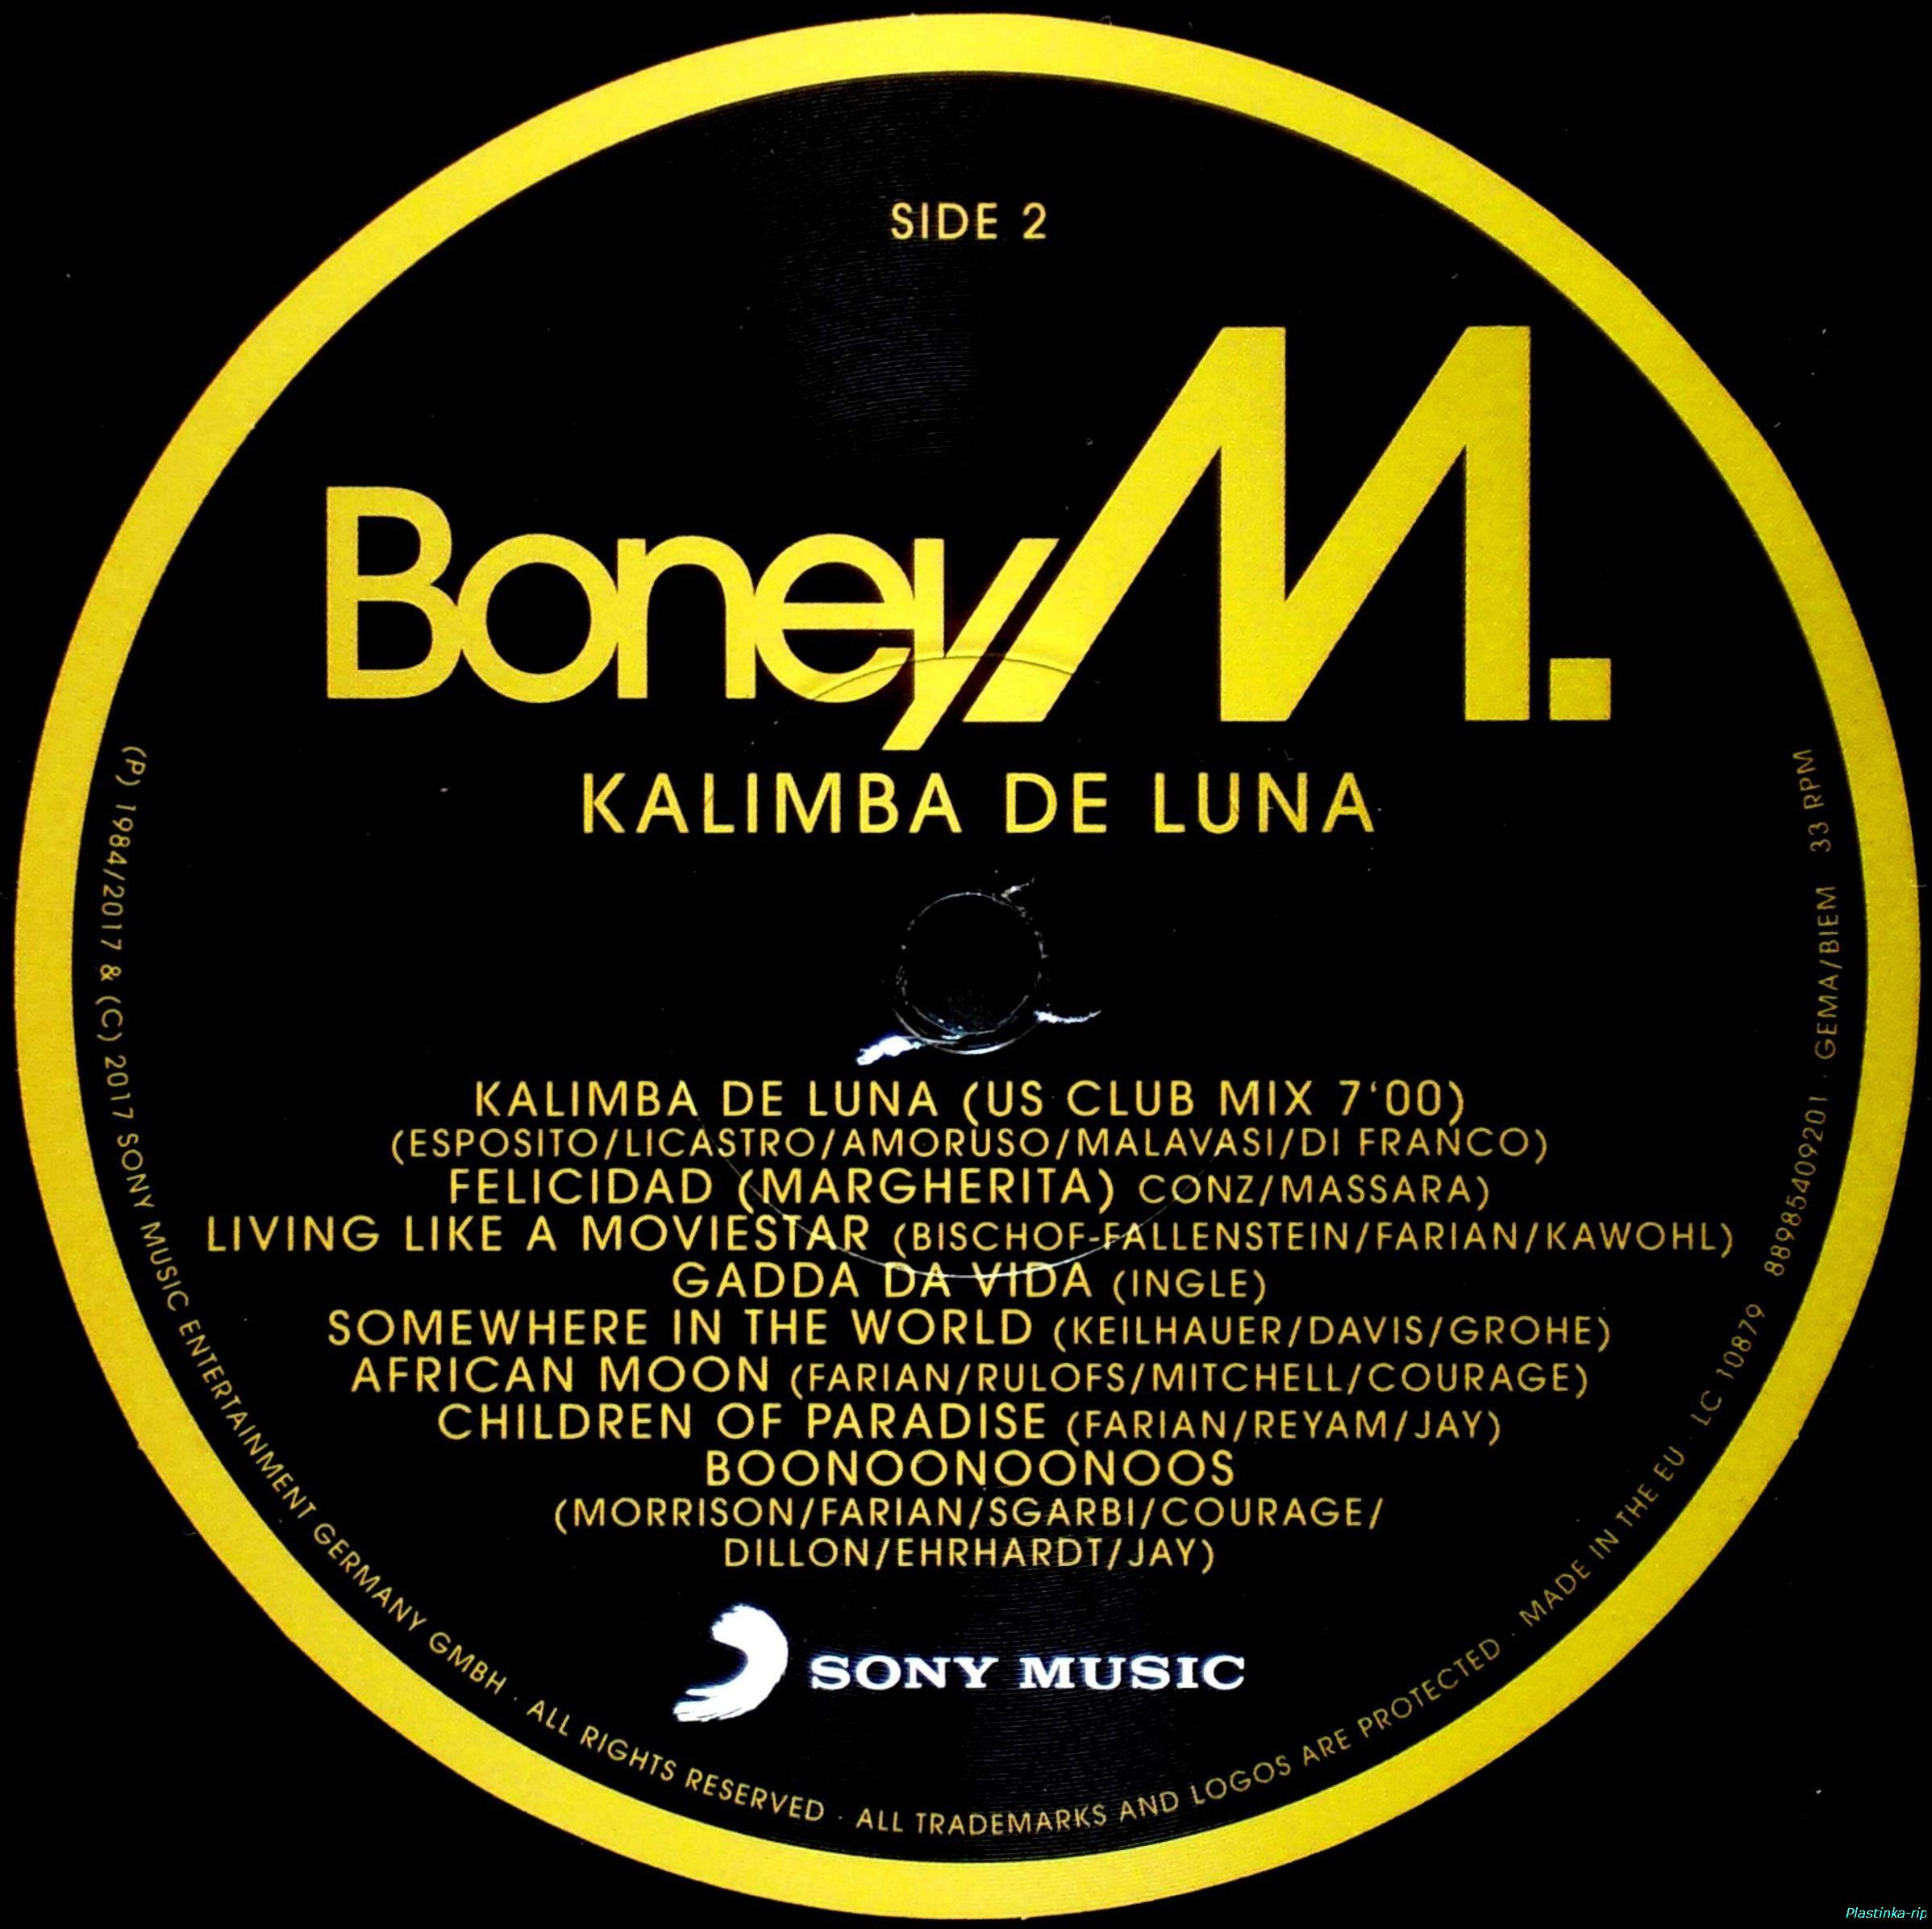 Boney m kalimba de. Этикетка пластинки Boney m. Boney m - Kalimba de Luna пластинка. Винил Boney m Kalimba de Luna. Boney m альбомы Kalimba de Luna.